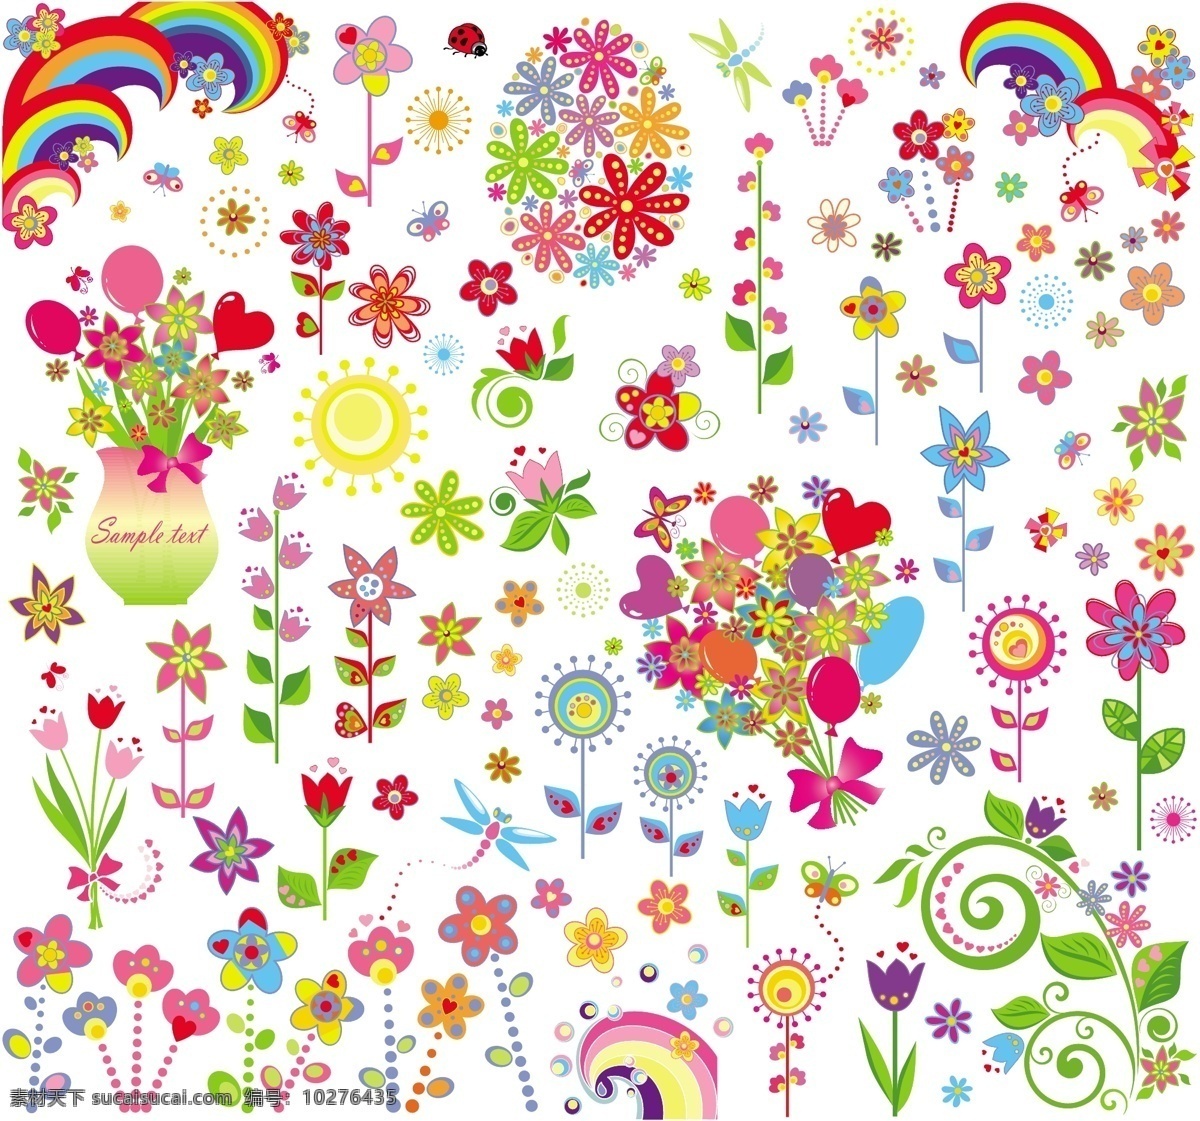 花儿 朵朵 彩虹 儿童插画 花朵 卡通 可爱 漫画 蜻蜓 矢量素材 太阳 心 矢量 叶子 矢量图 其他矢量图